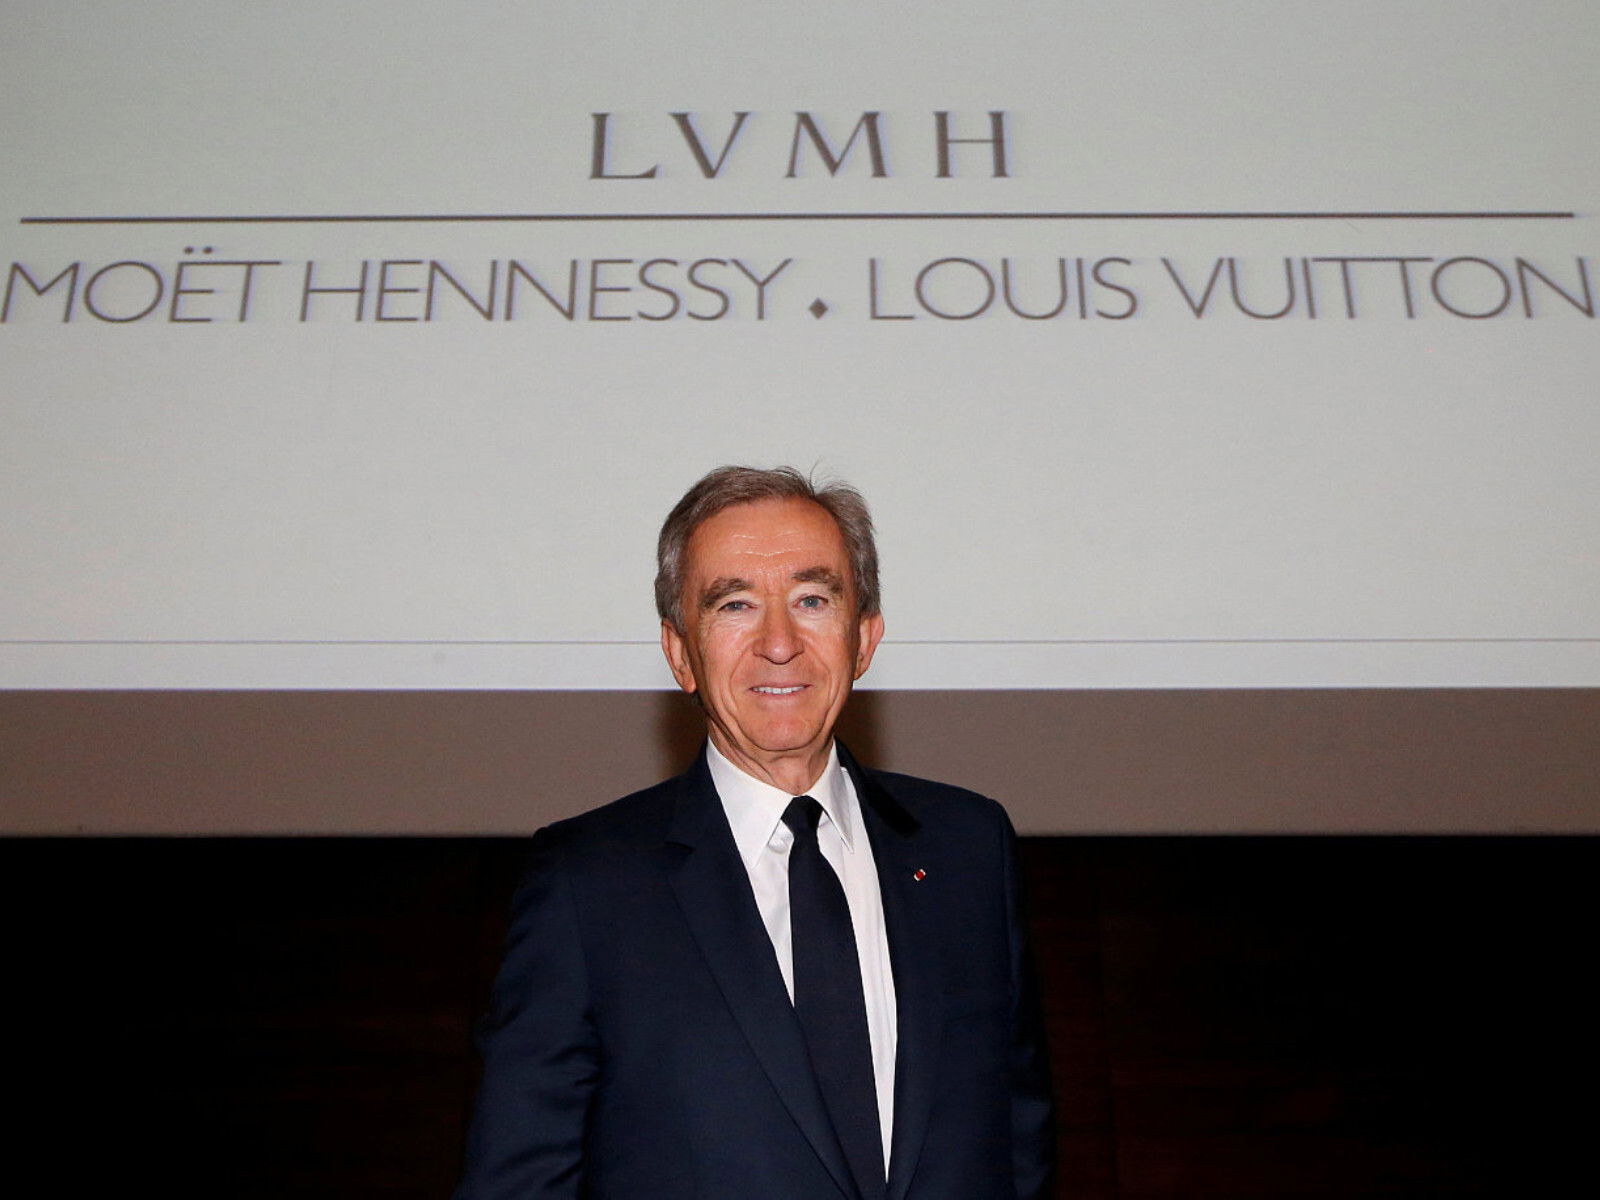 全球最大奢侈品集團 LVMH 市值突破 4000 億歐羅 執行長 BERNARD ARNAULT 單日資產增長 242 億港幣